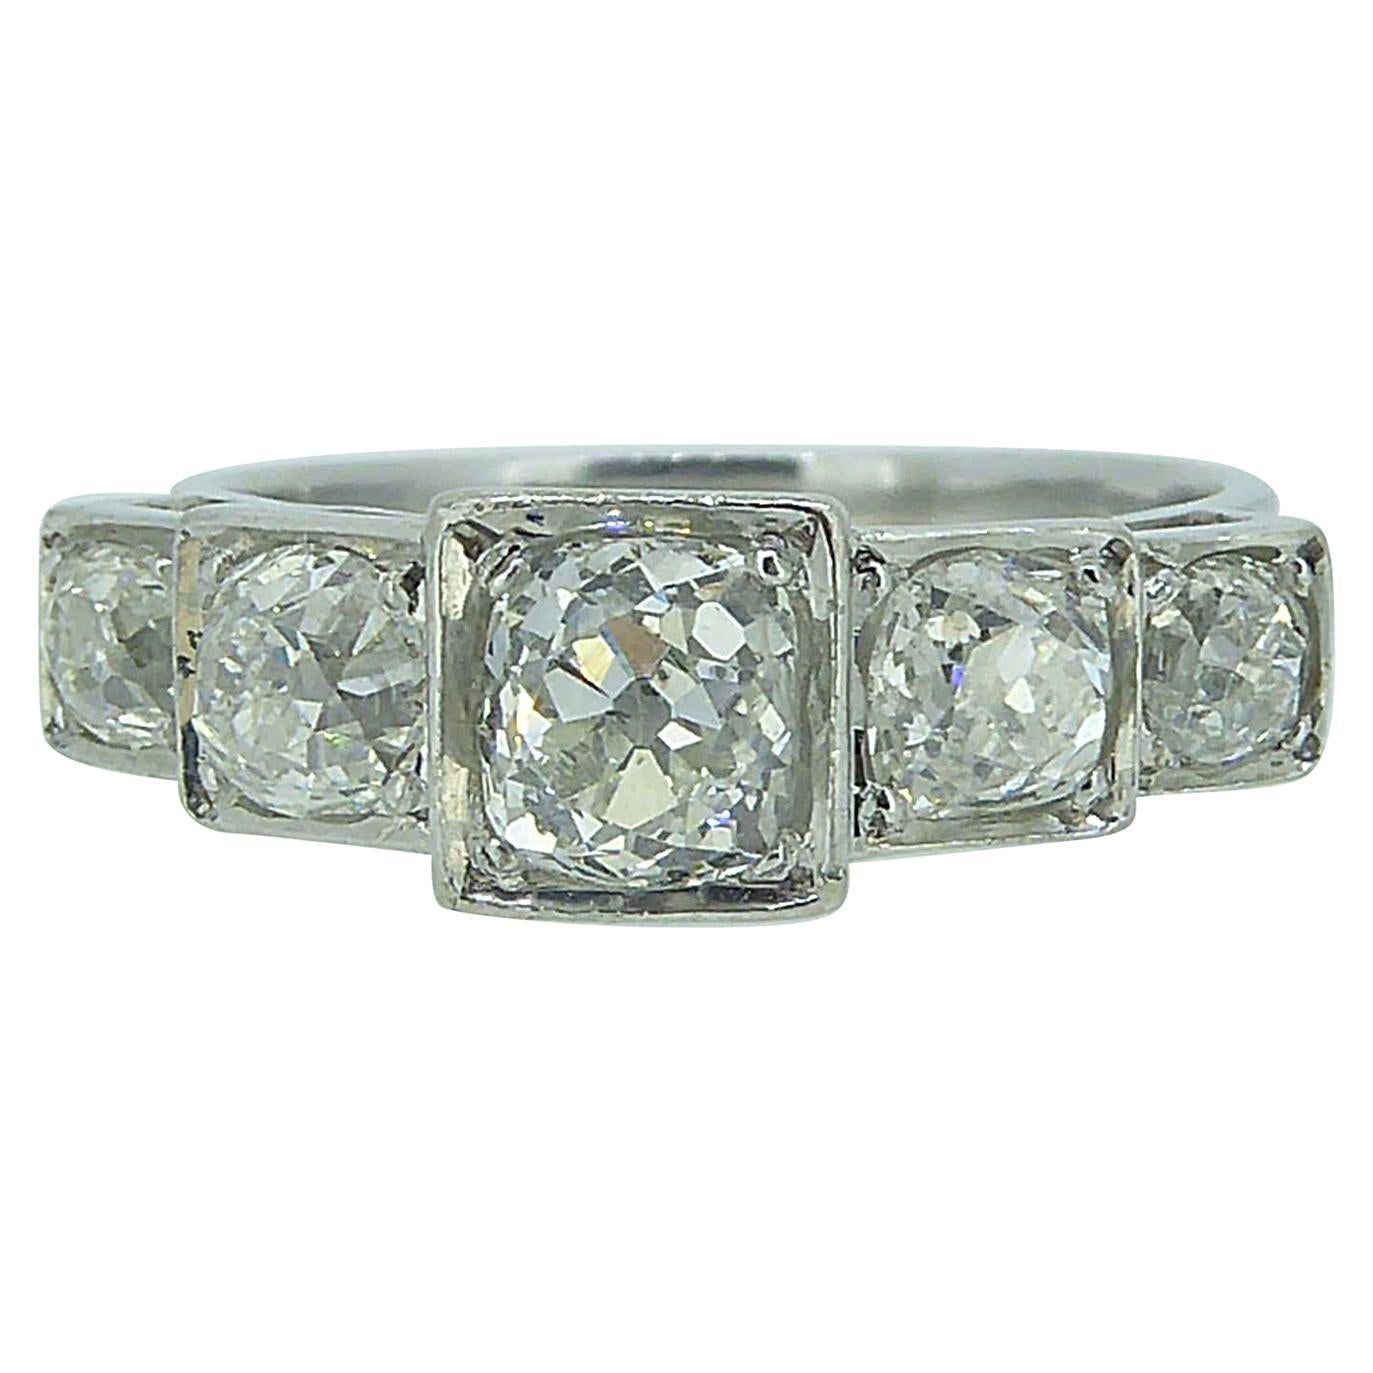 Art Deco Style 1.75 Carat Old Cut Diamond Ring, circa 1930s-1940s